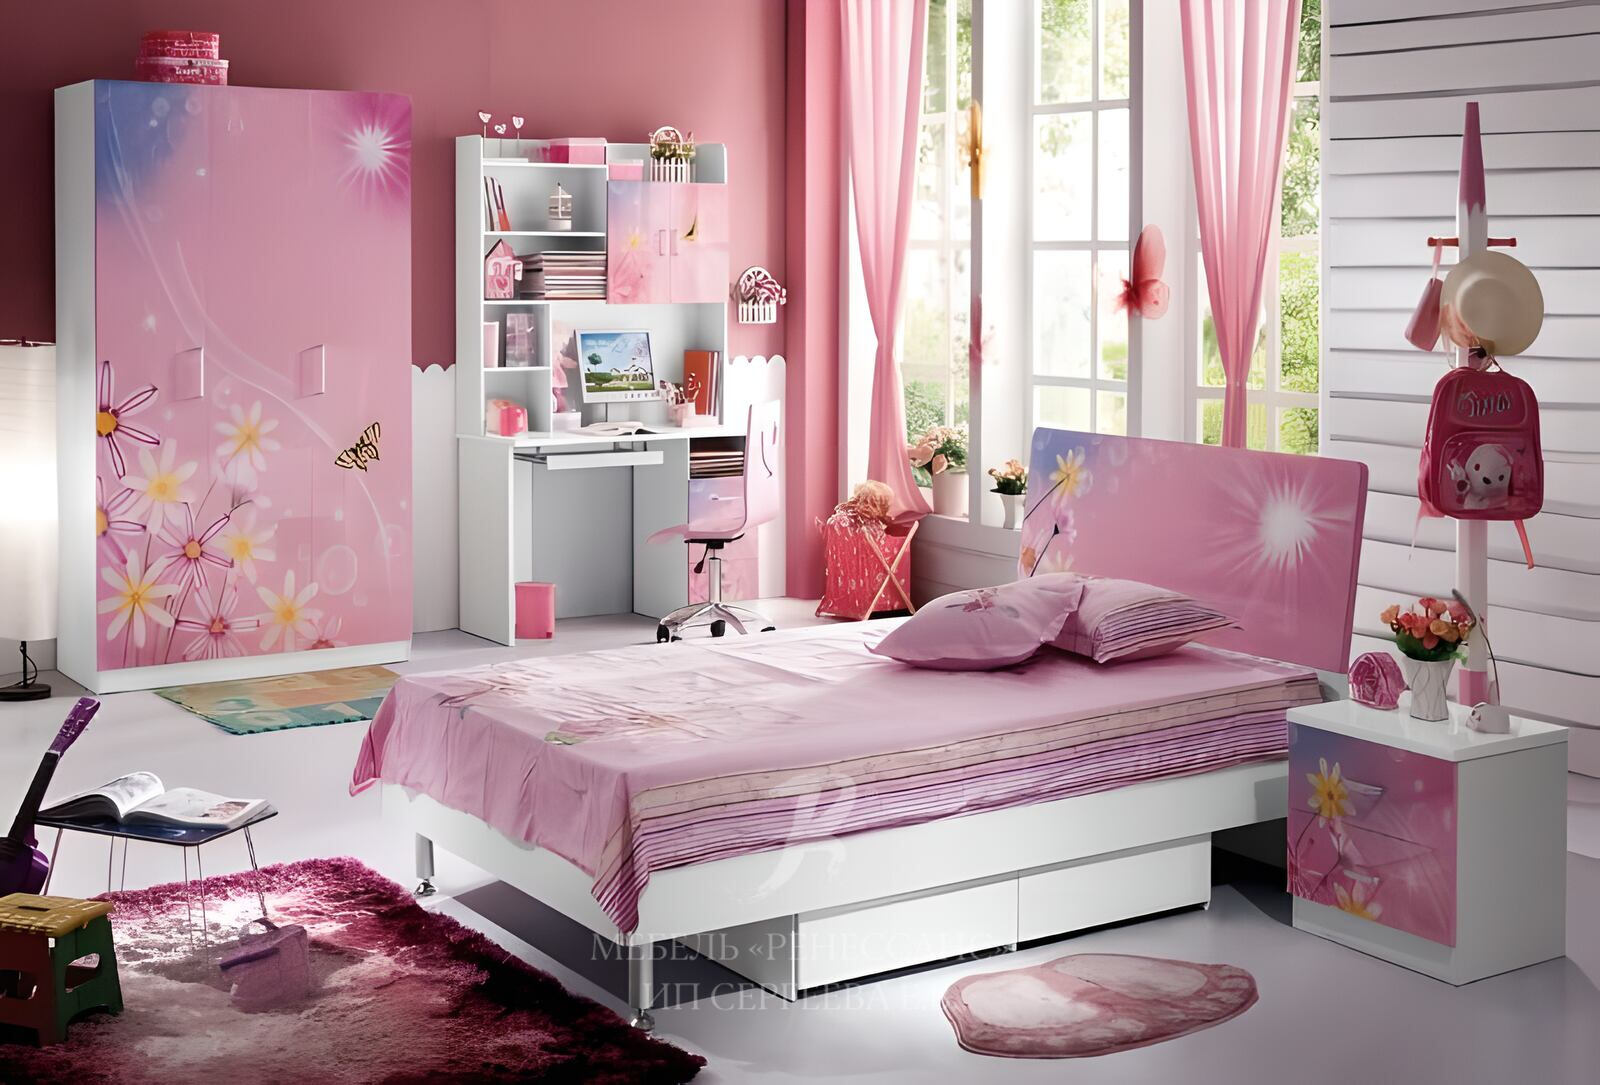 Красивая комната для девочки. Спальня для девочки. Красивая детская спальня. Спальня комната для девочки. Мебель для девочки в комнату.